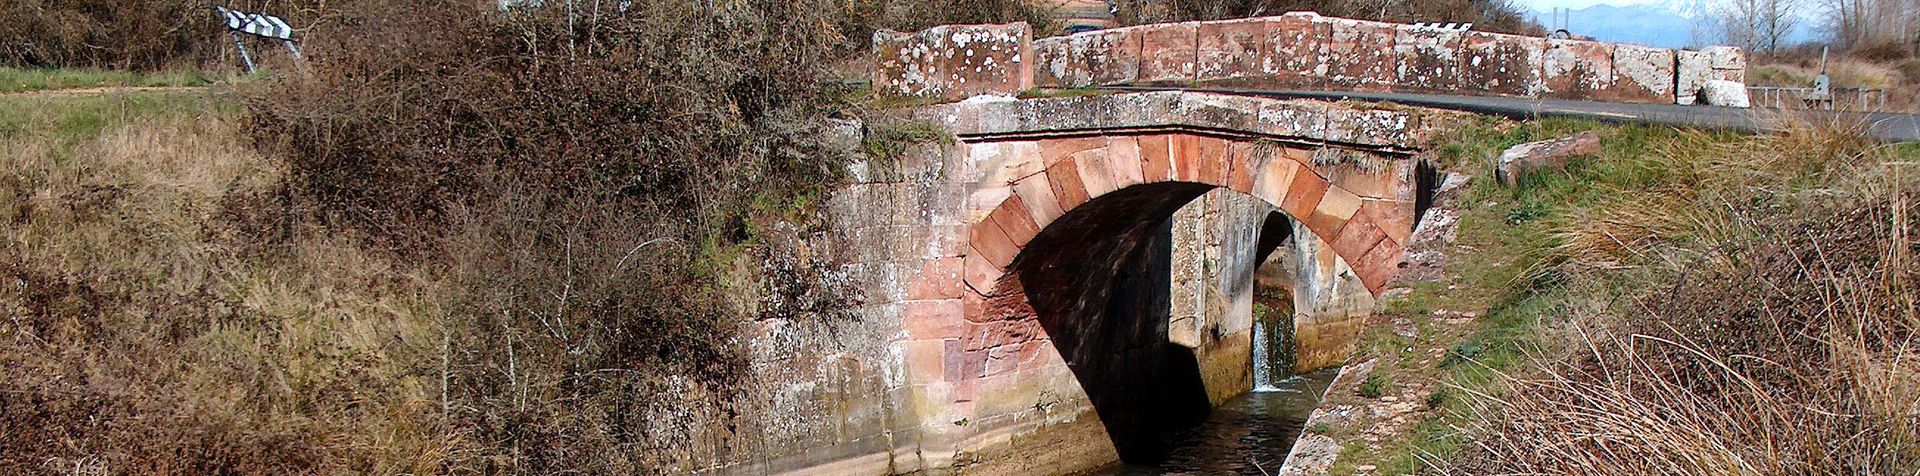 Puente del Canal de Castilla